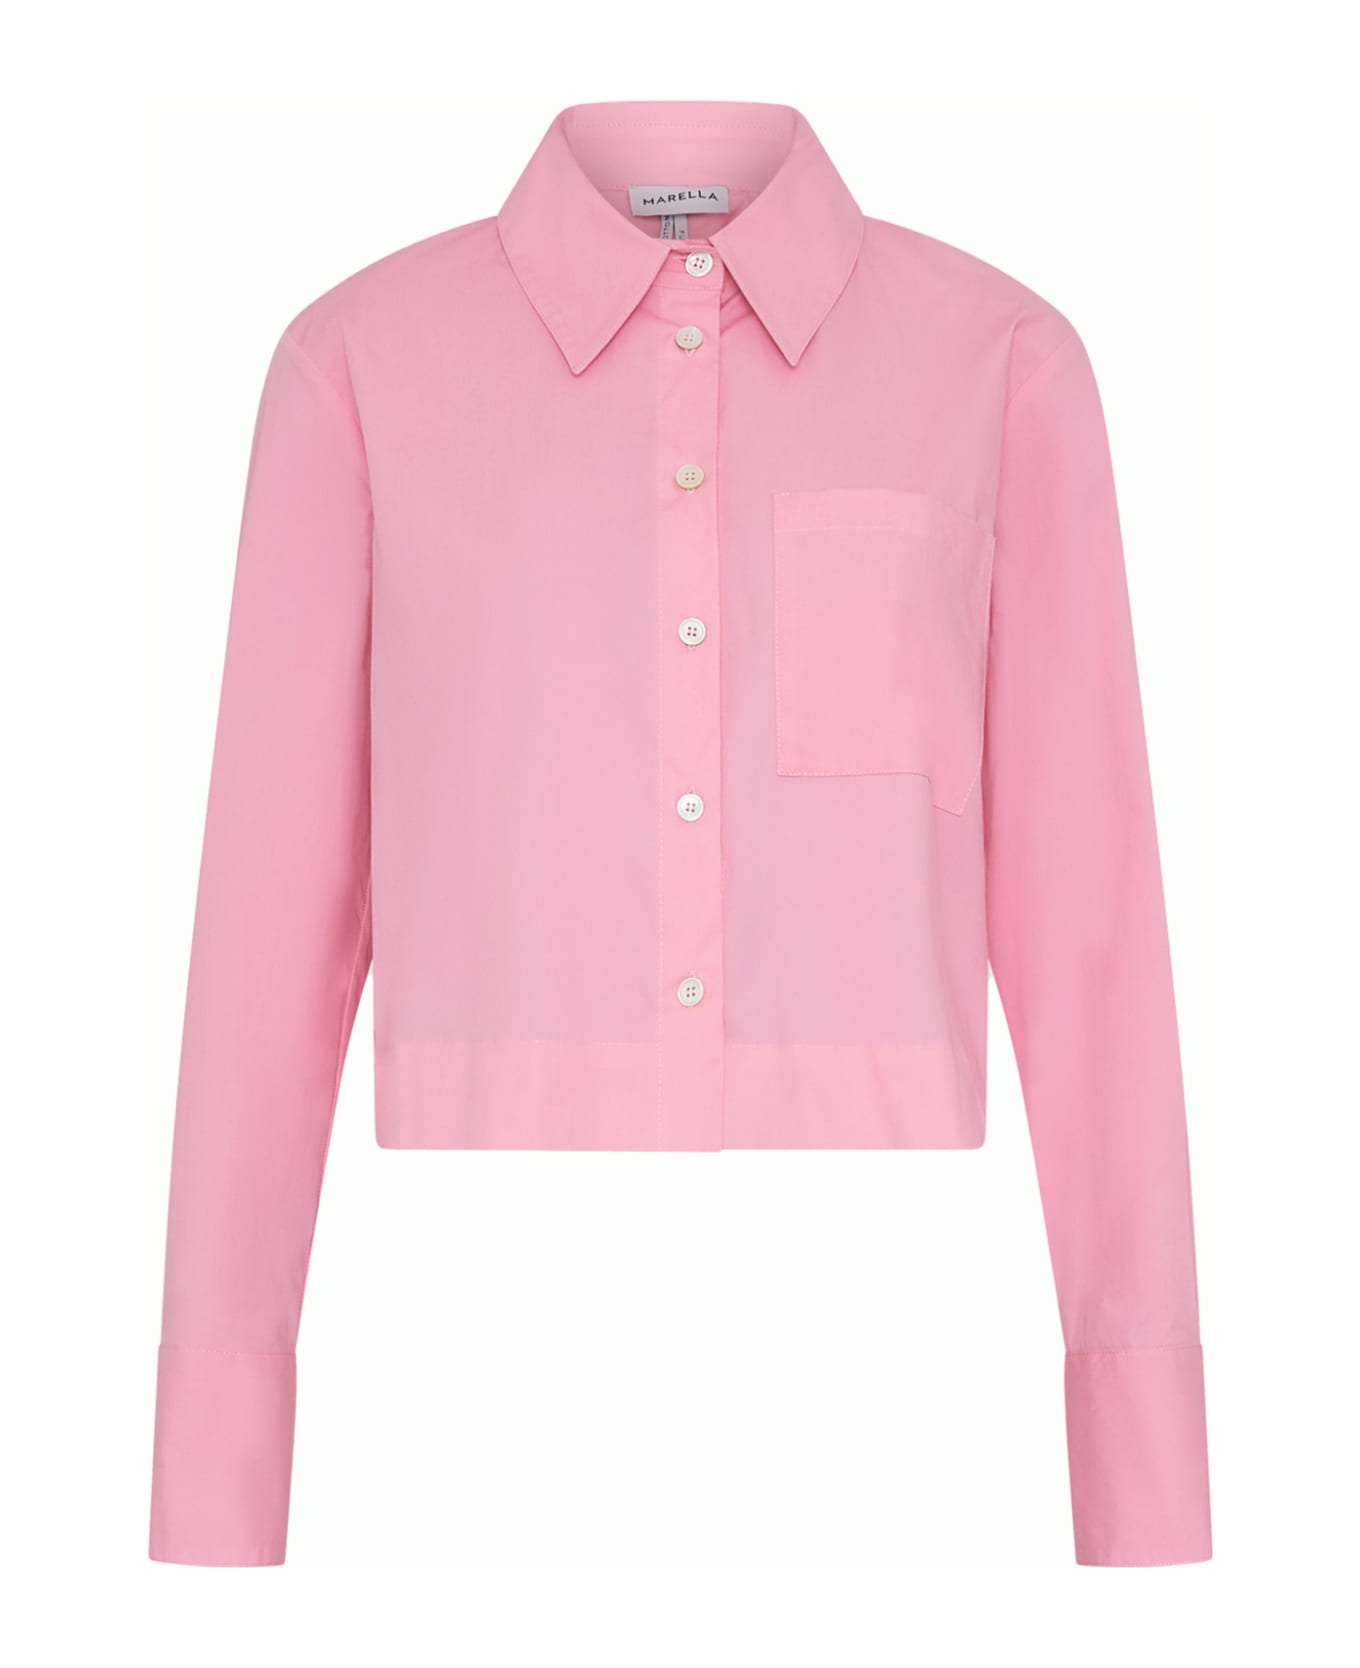 Marella Pink Long-sleeved Shirt - ROSA INTENSO